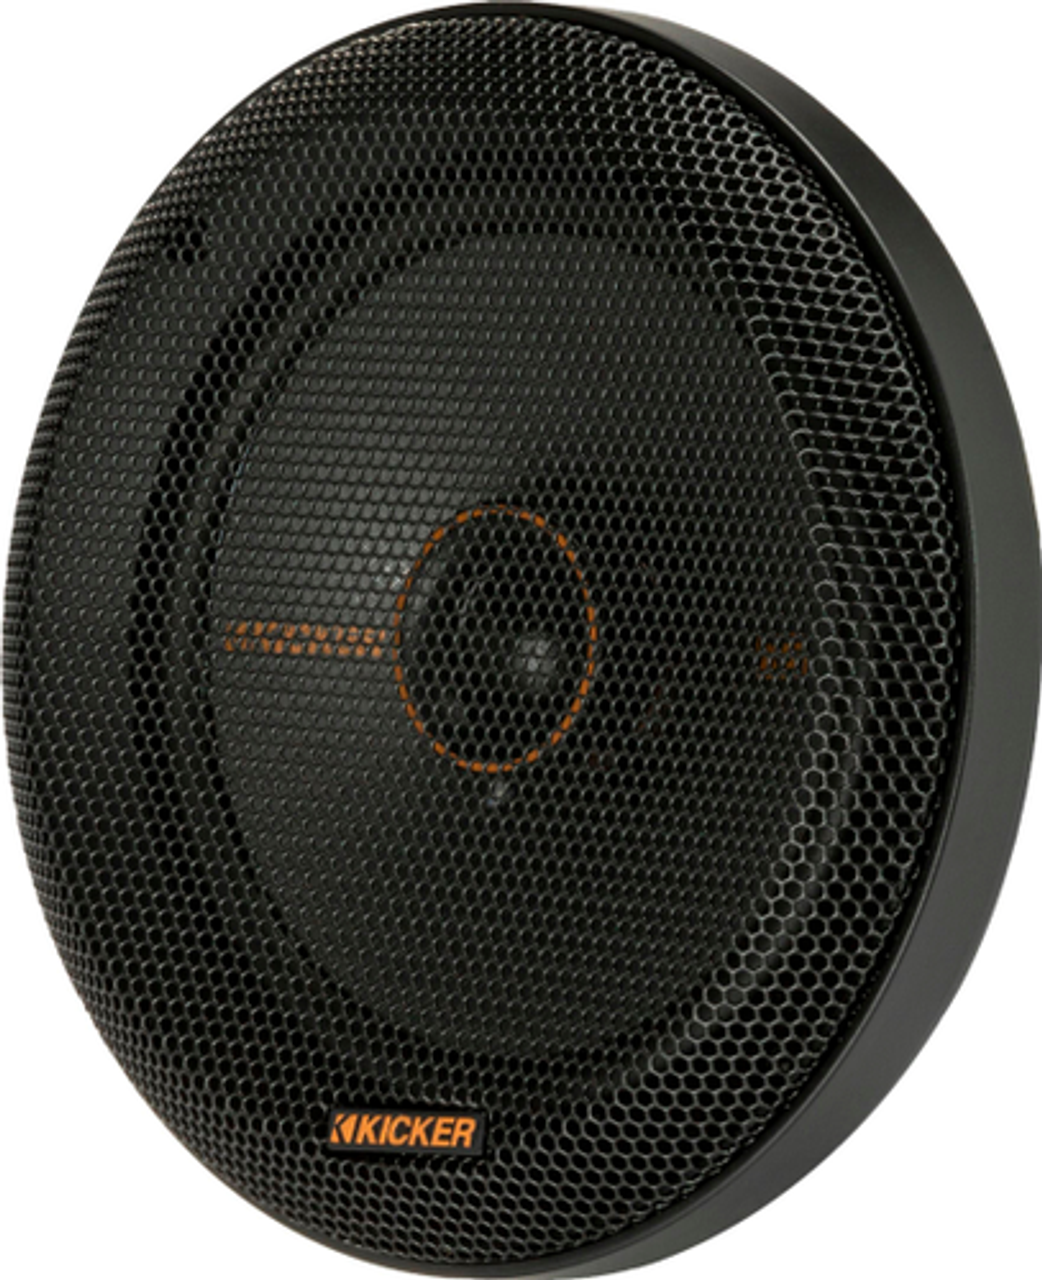 KICKER - KS Series 6-1/2" 2-Way Car Speakers with Polypropylene Cones (Pair) - Black